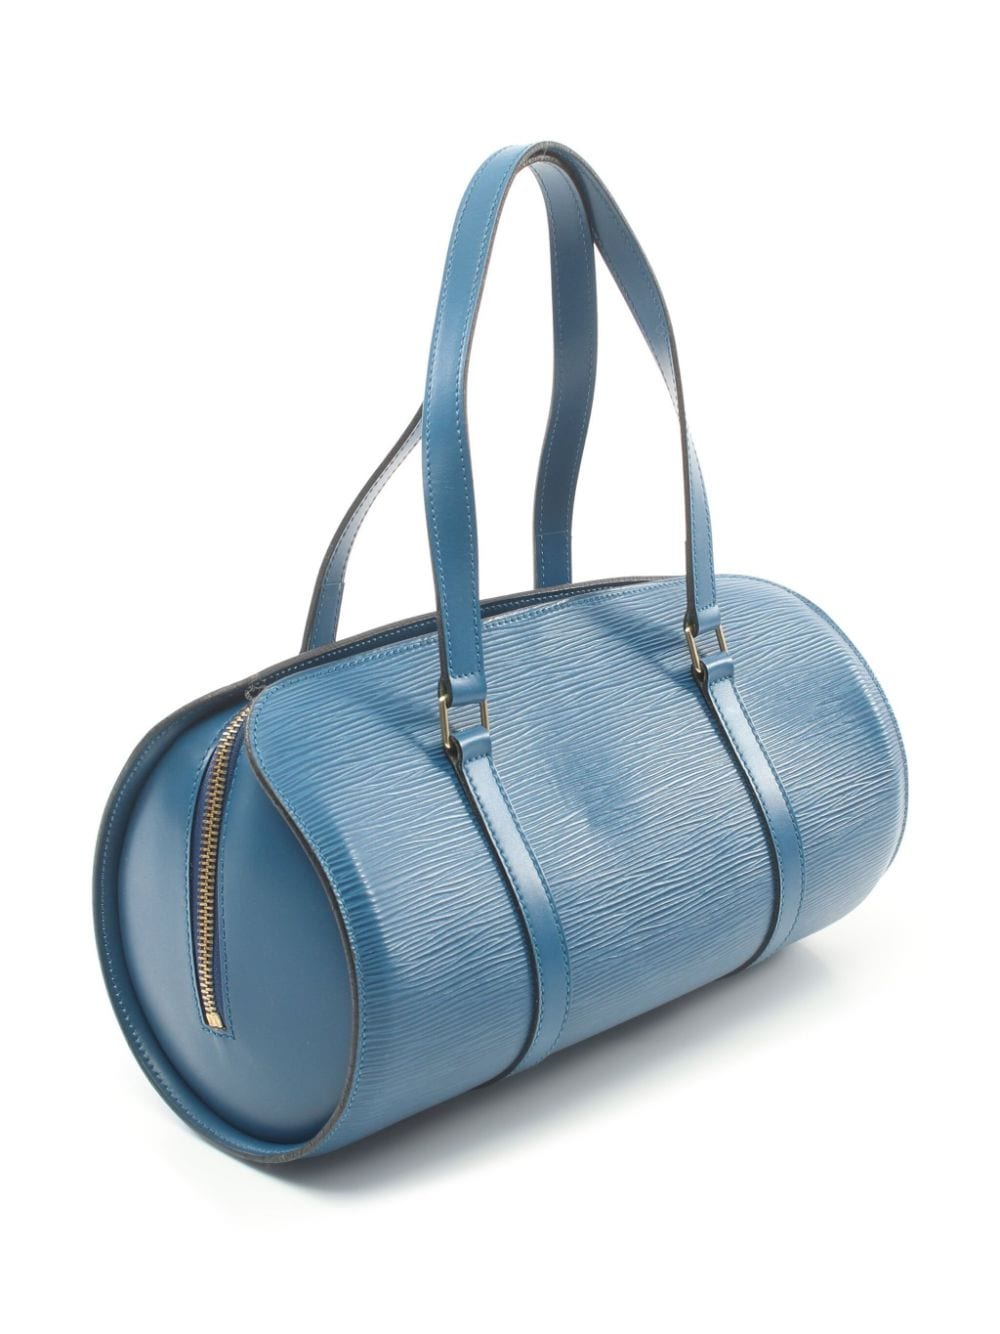 Louis Vuitton Pre-Owned 1995 Papillon handbag - Blauw